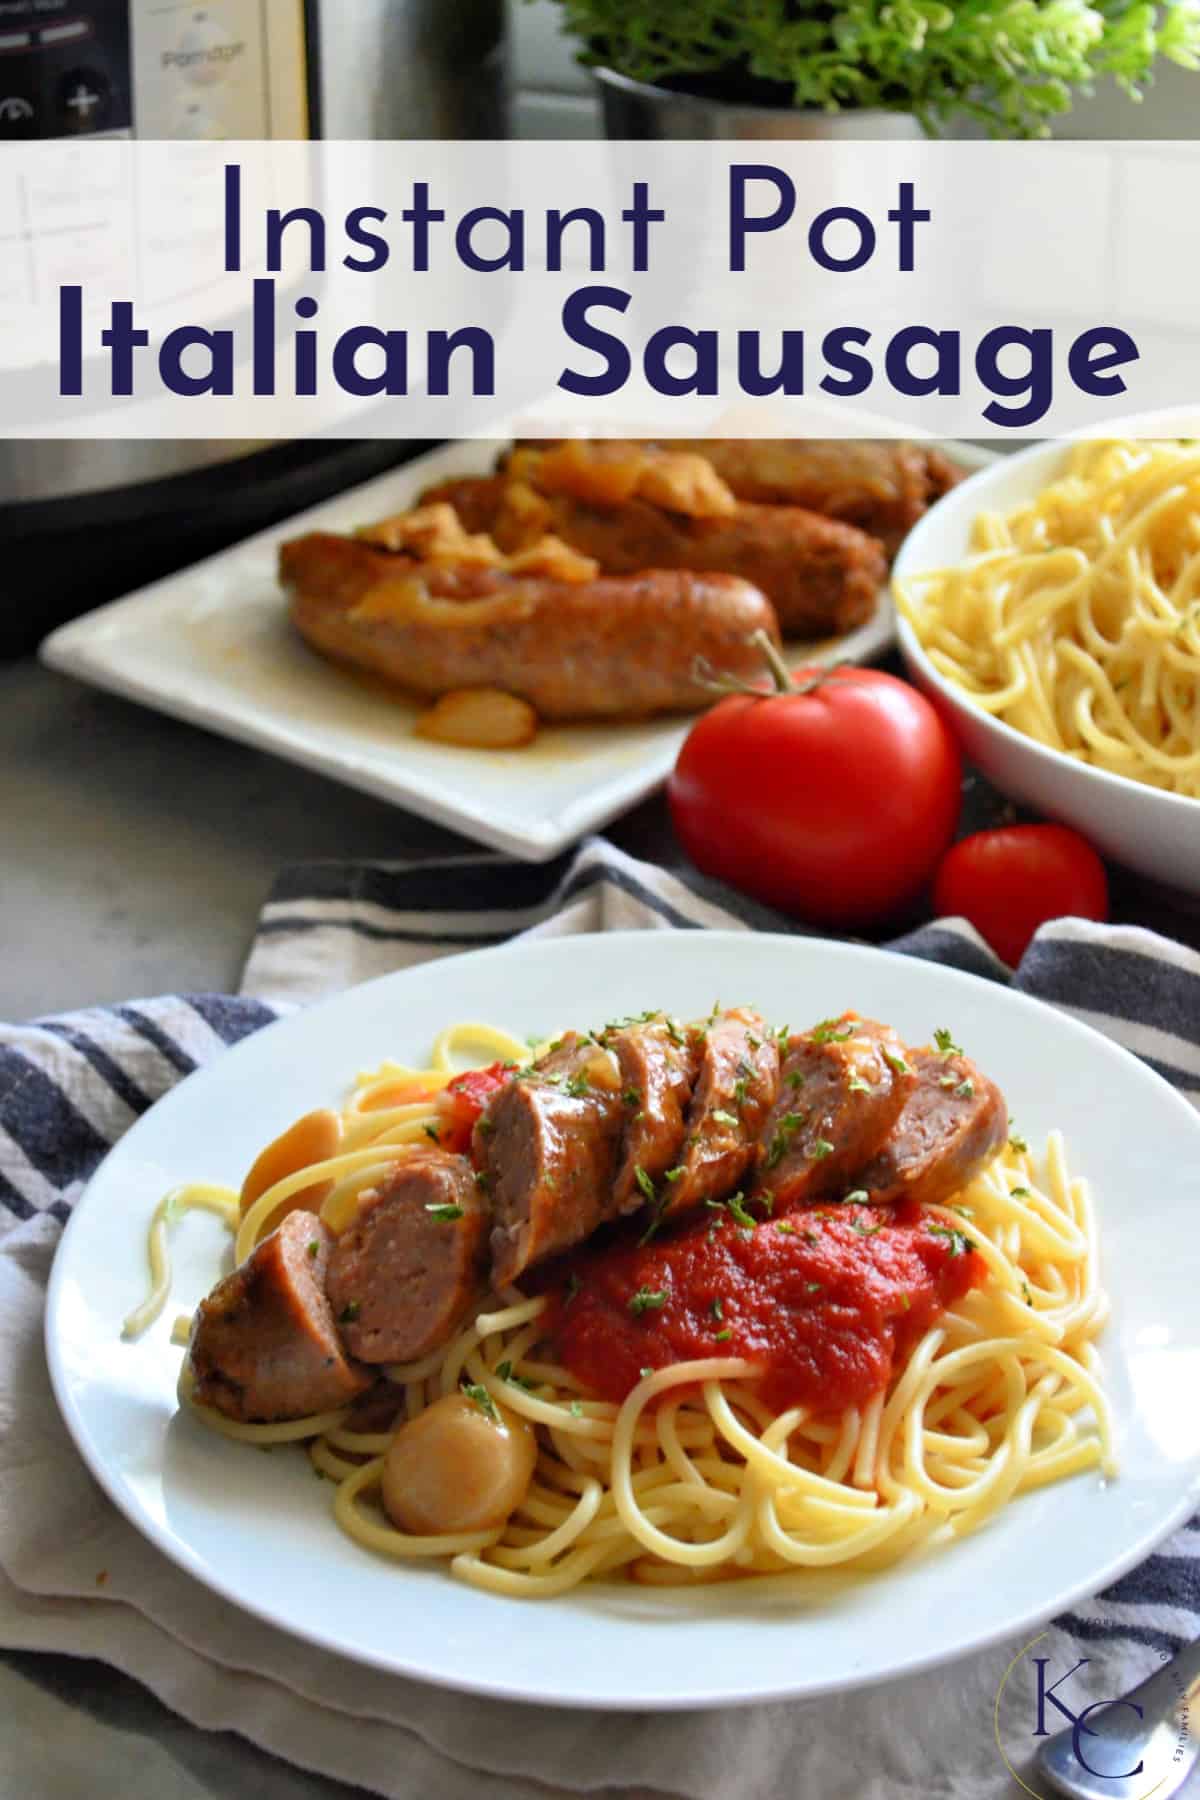  Spaghettis plaqués à la marinara, aux herbes et à la saucisse italienne tranchée avec le texte du titre.